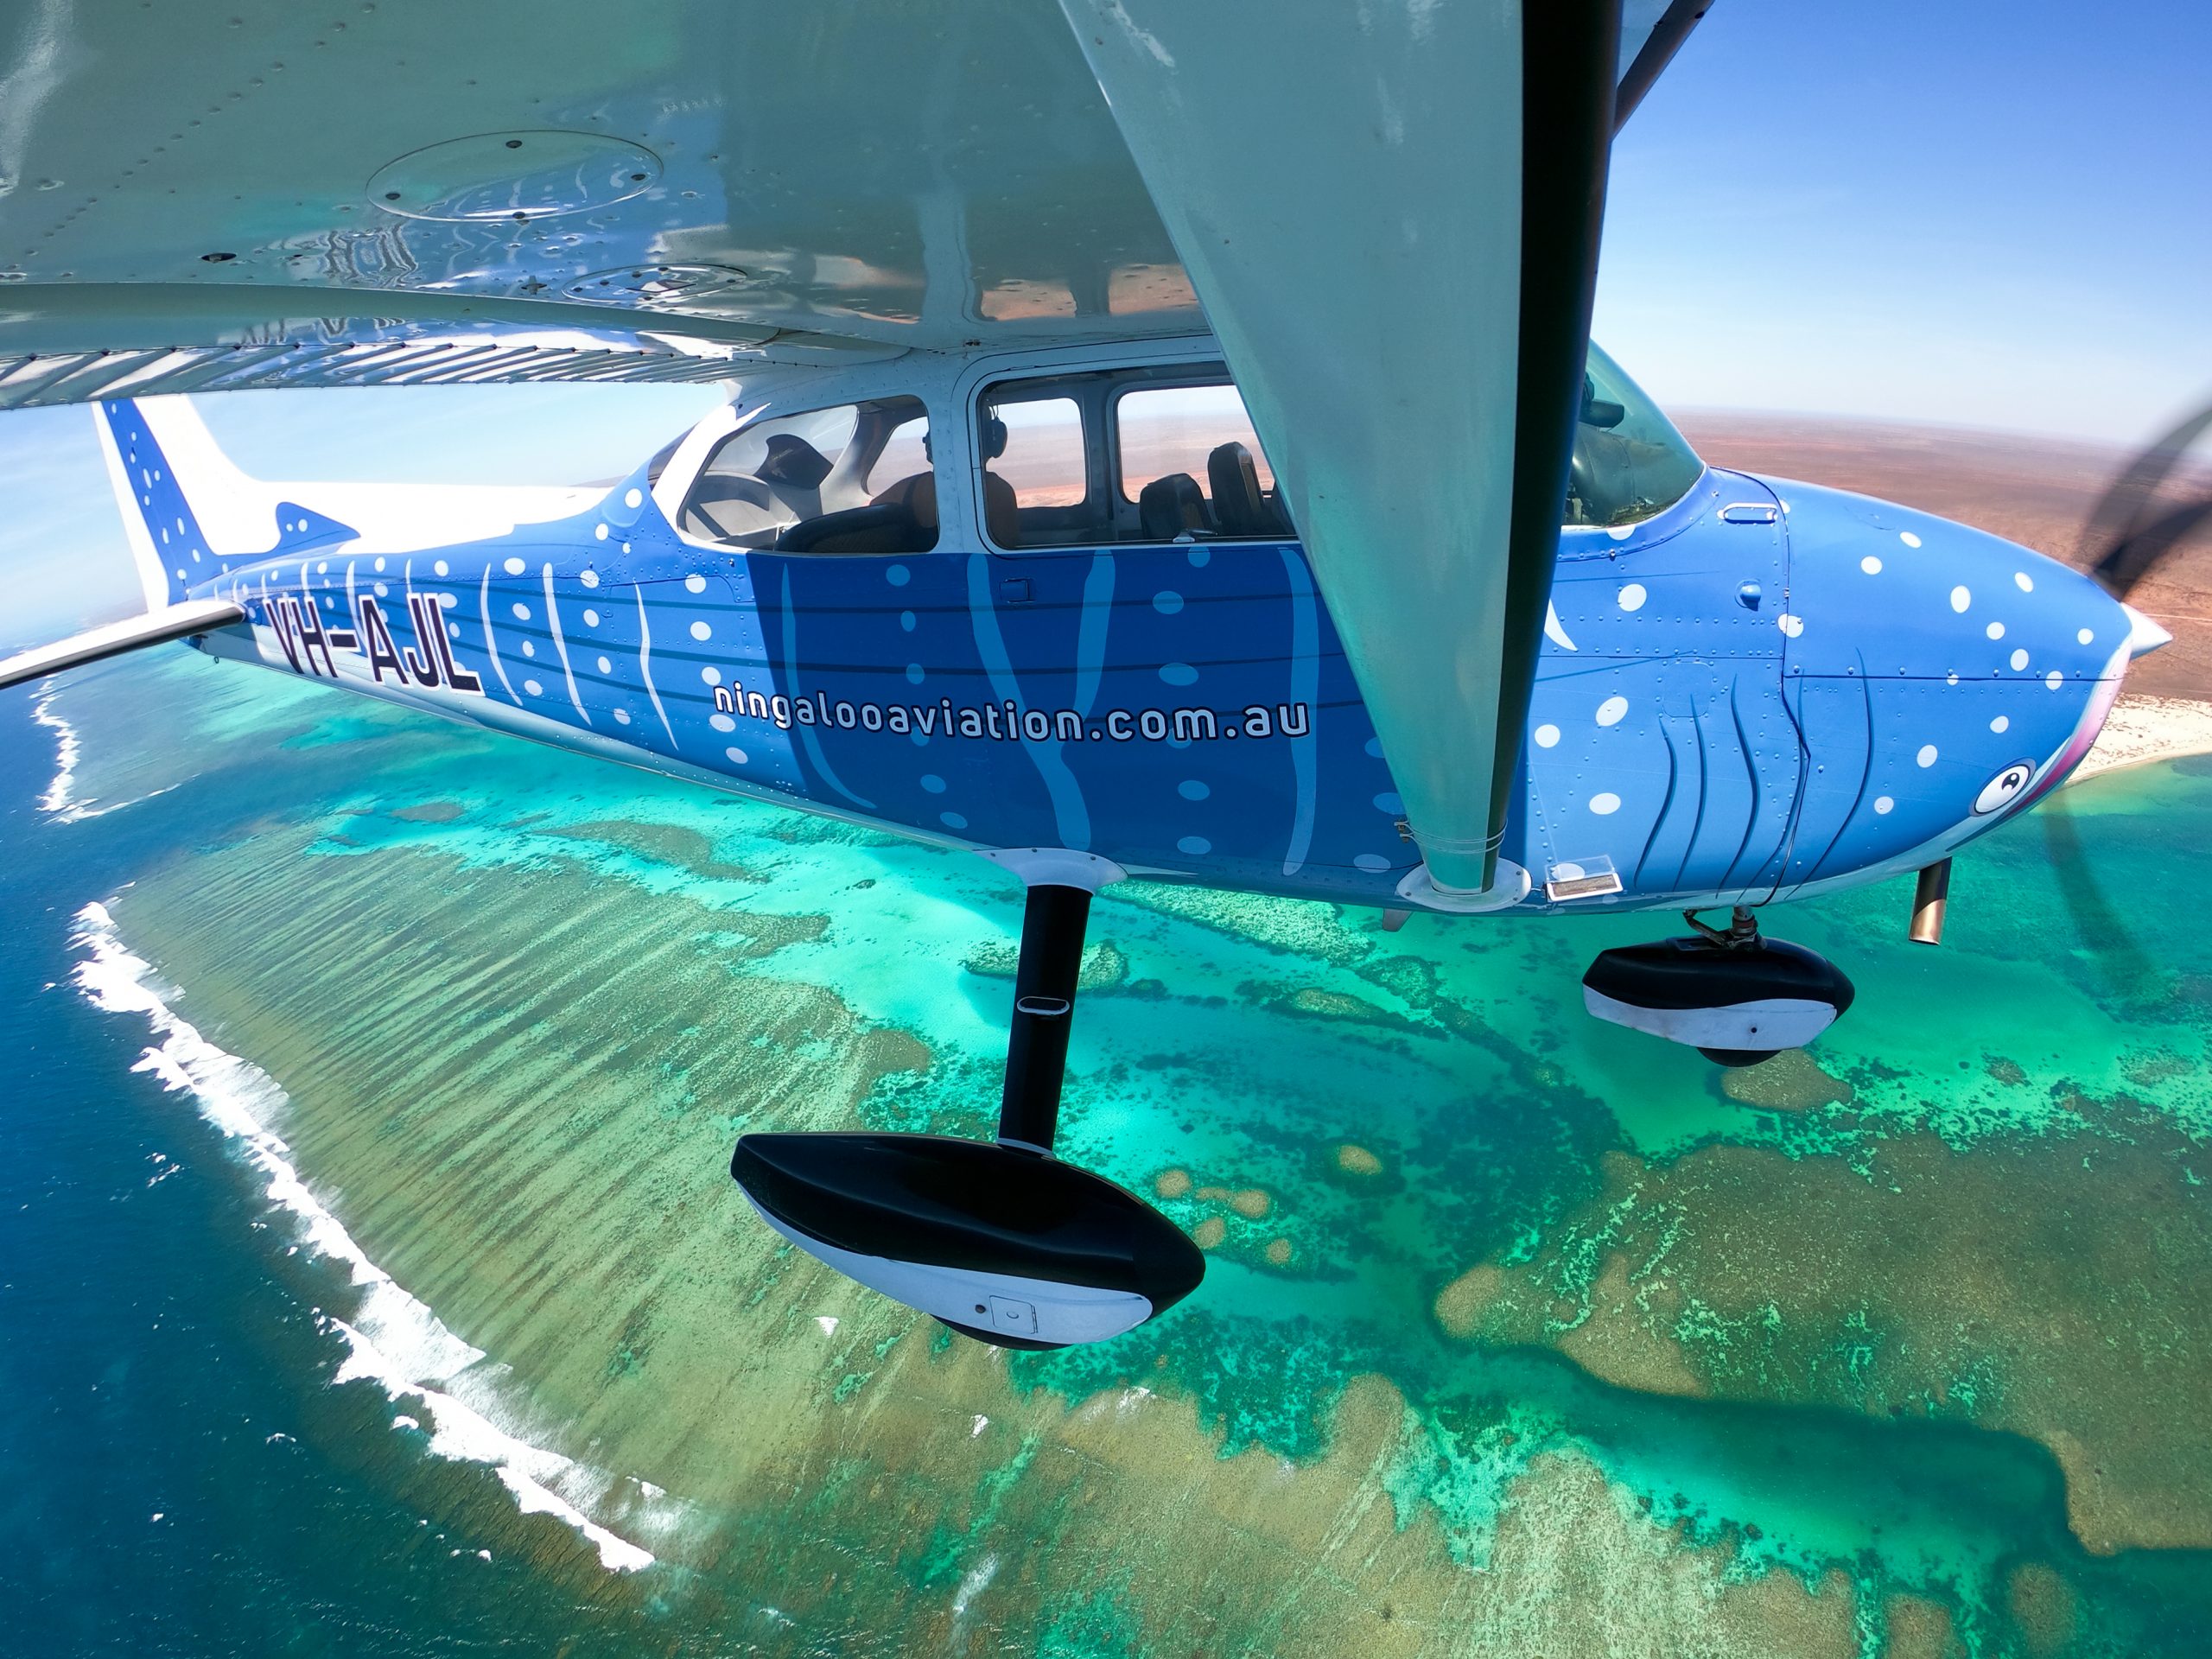 Ningaloo Aviation scenic flight aboard Krill Seeker